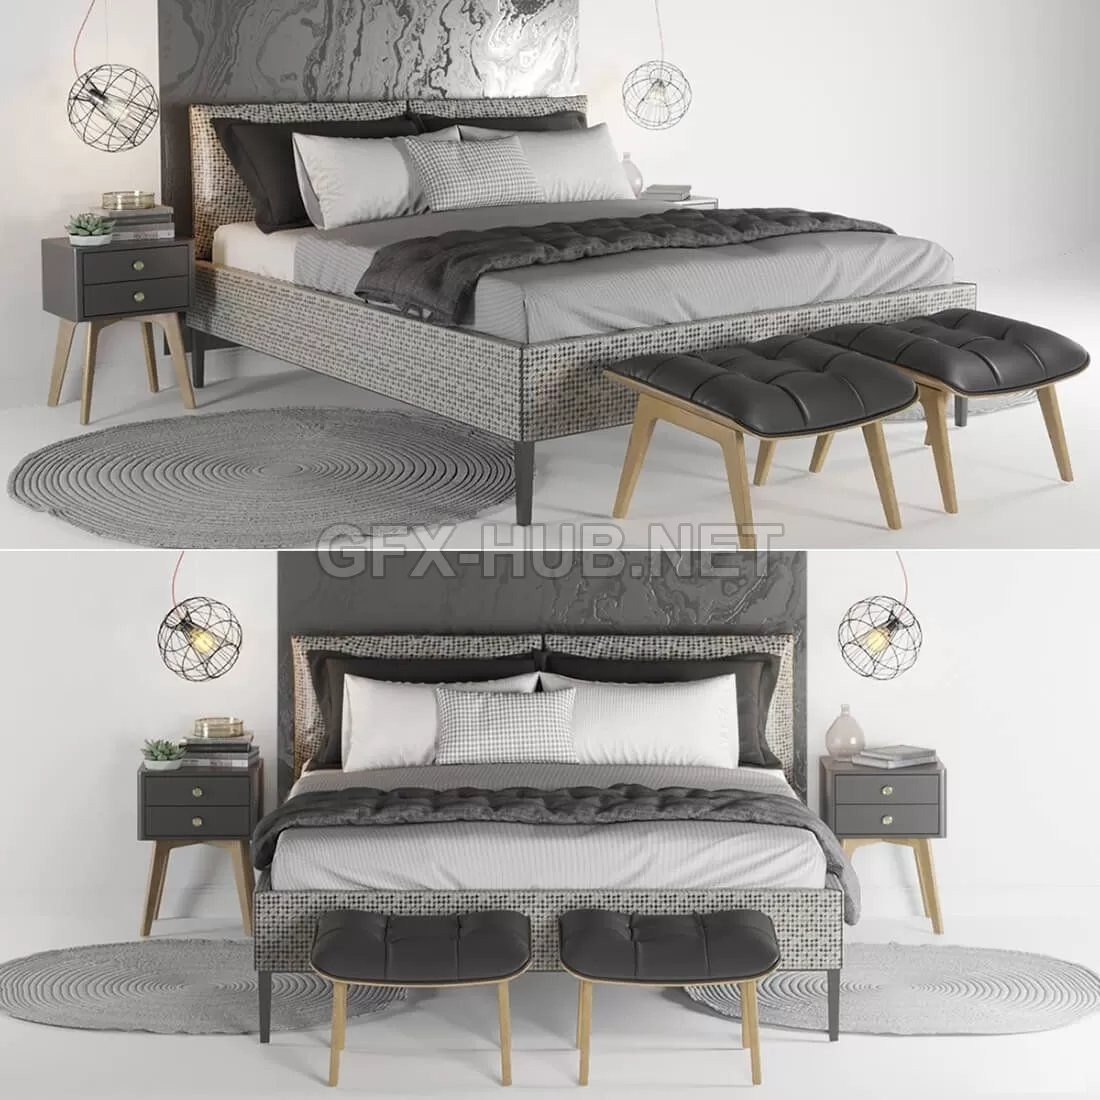 BED – Bedroom set 2